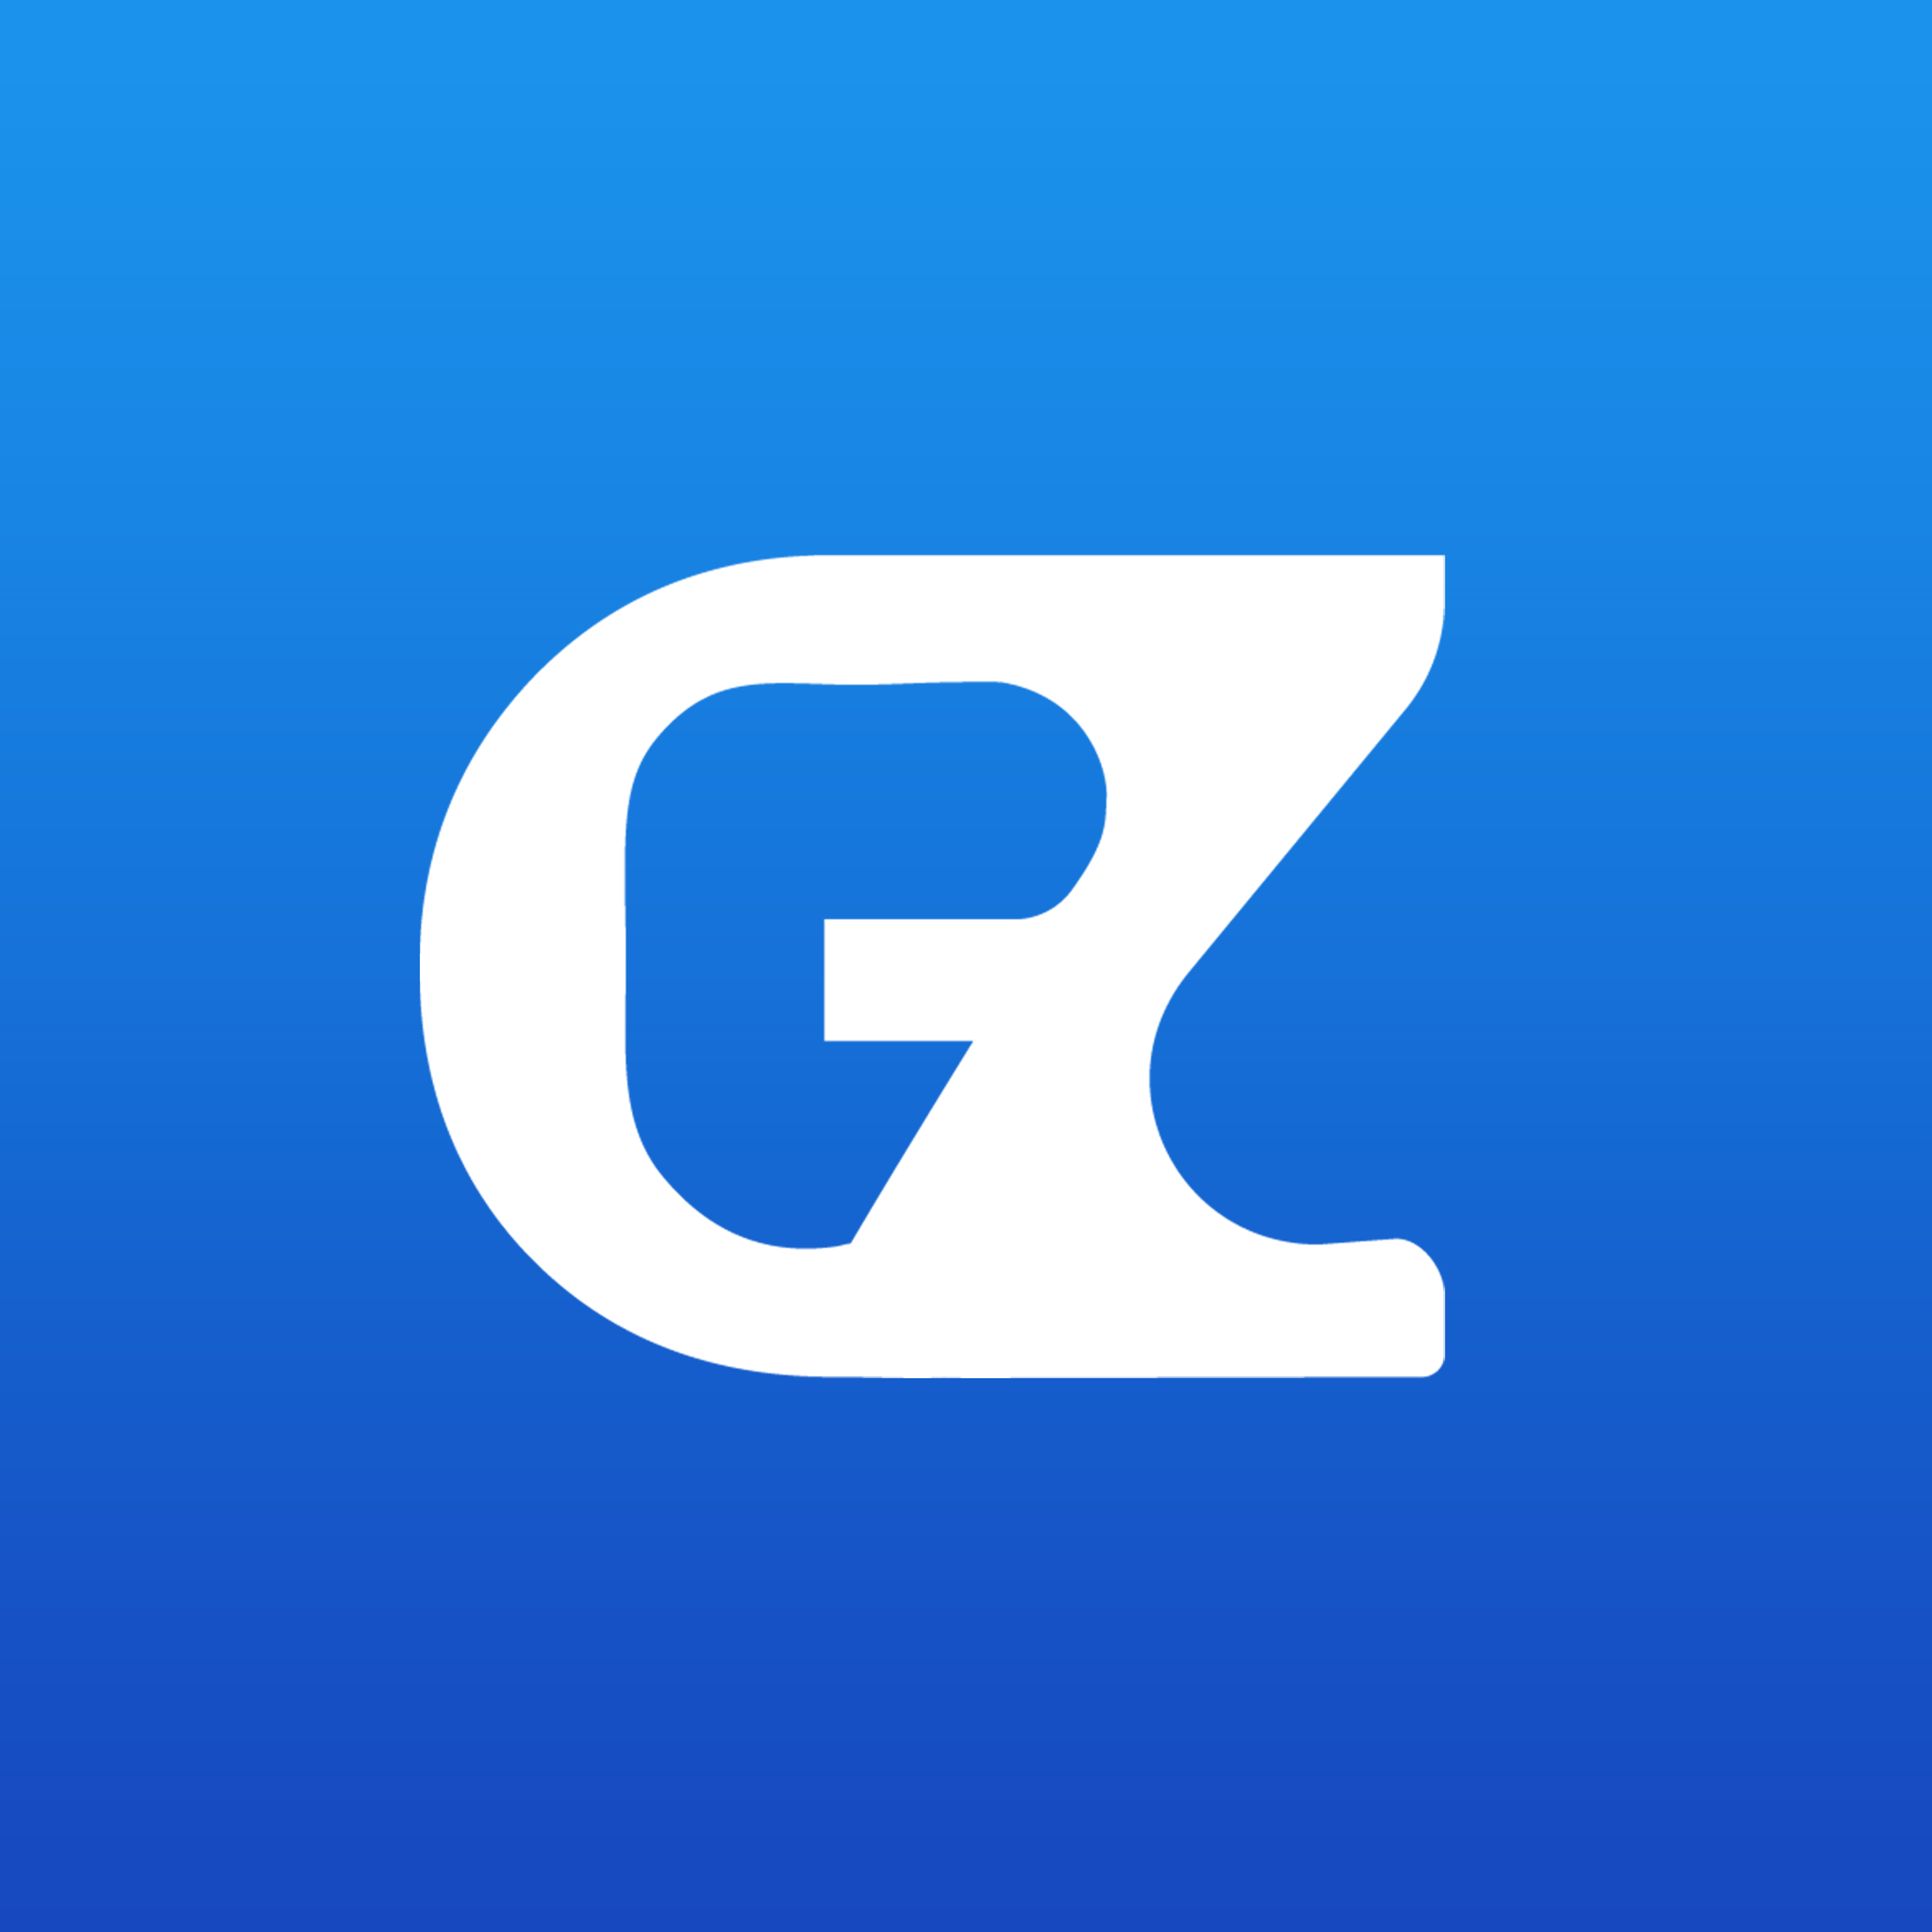 GZ Team的头像-GenZ Academy